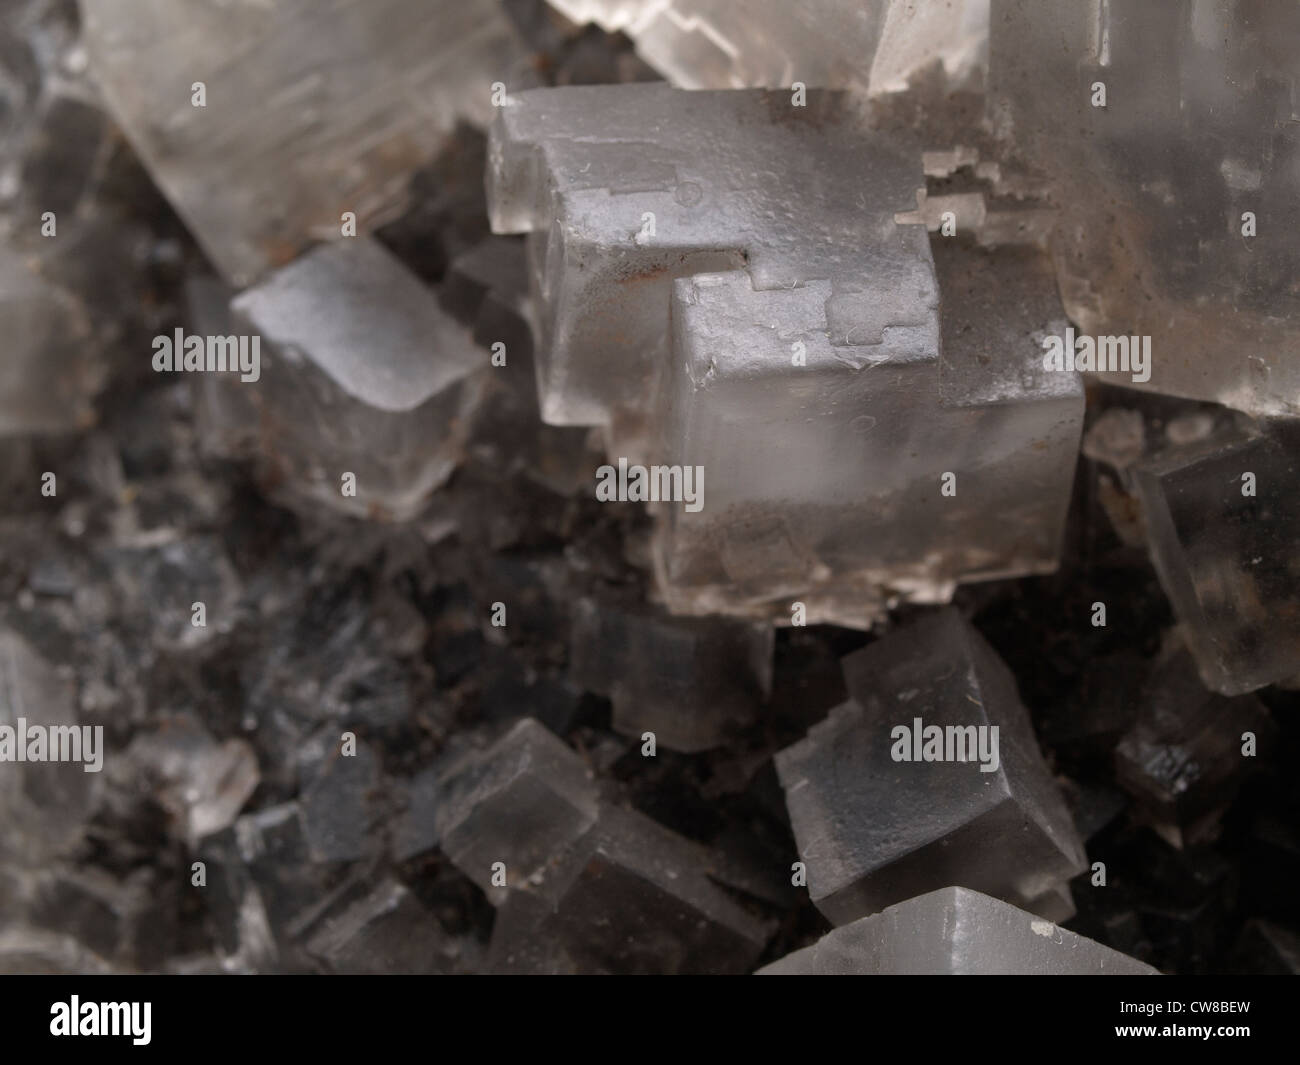 El halito; Wieliczka, Polonia. Gran cristal escalonado tiene borde largo unos 15 milímetros de largo. Foto de stock